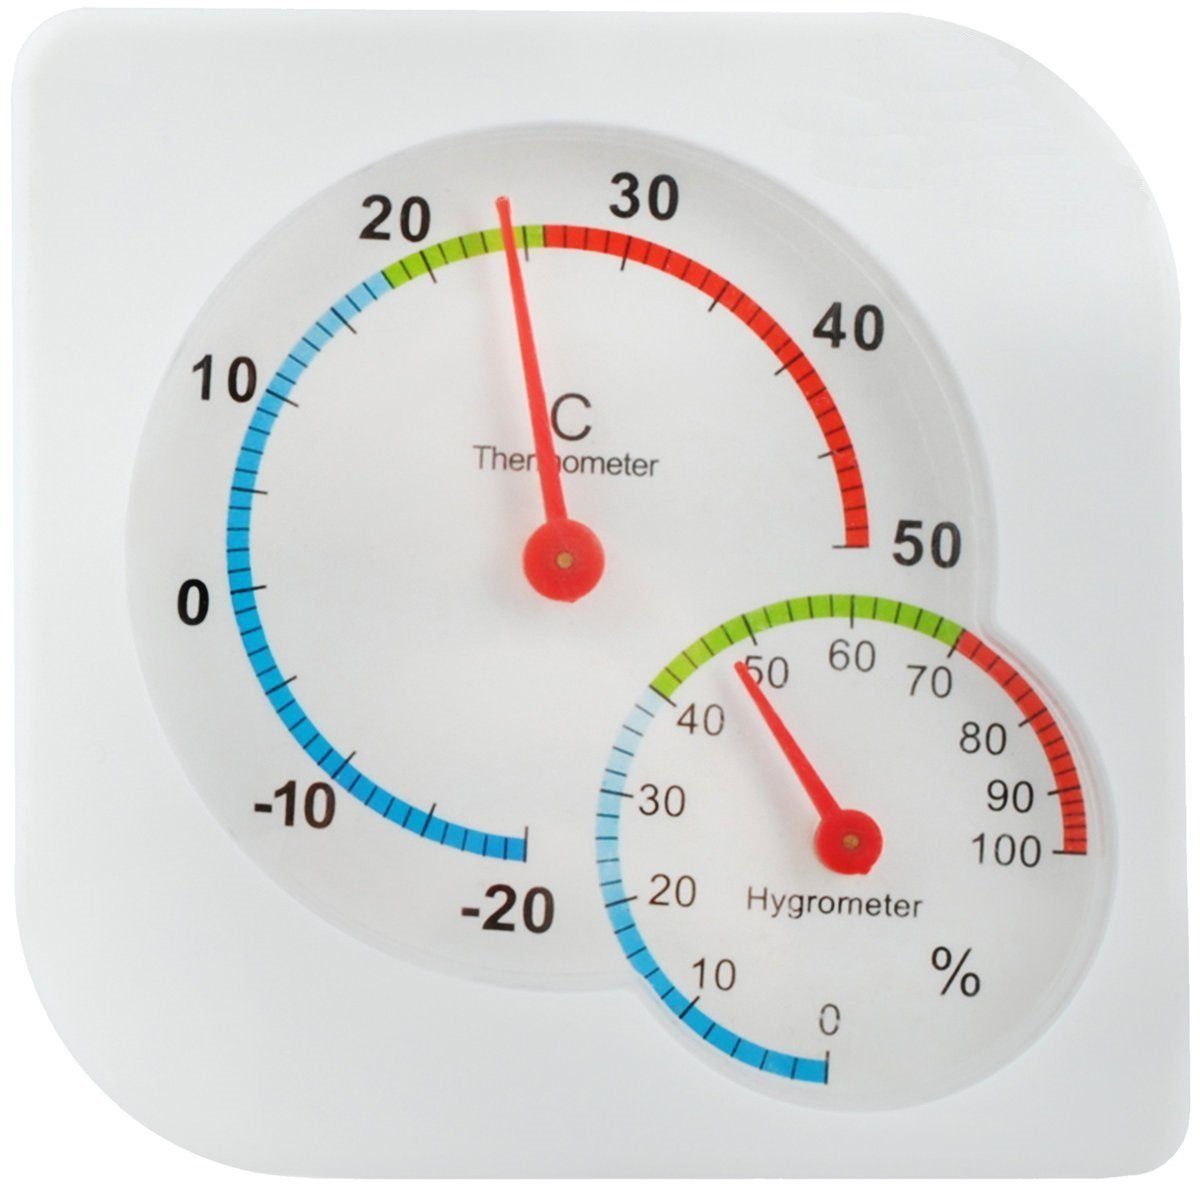 https://i.otto.de/i/otto/baa5370c-6f88-4a09-bca8-eae091485405/mavura-hygrometer-mavuraliving-thermometer-mit-hygrometer-innen-aussen-garten-thermo-analog-luftfeuchtigkeit-messgeraet-luftfeuchtigkeitsmesser-temperaturmesser-temperaturmessgeraet-aussen-innen-mini-wetterstation.jpg?$formatz$